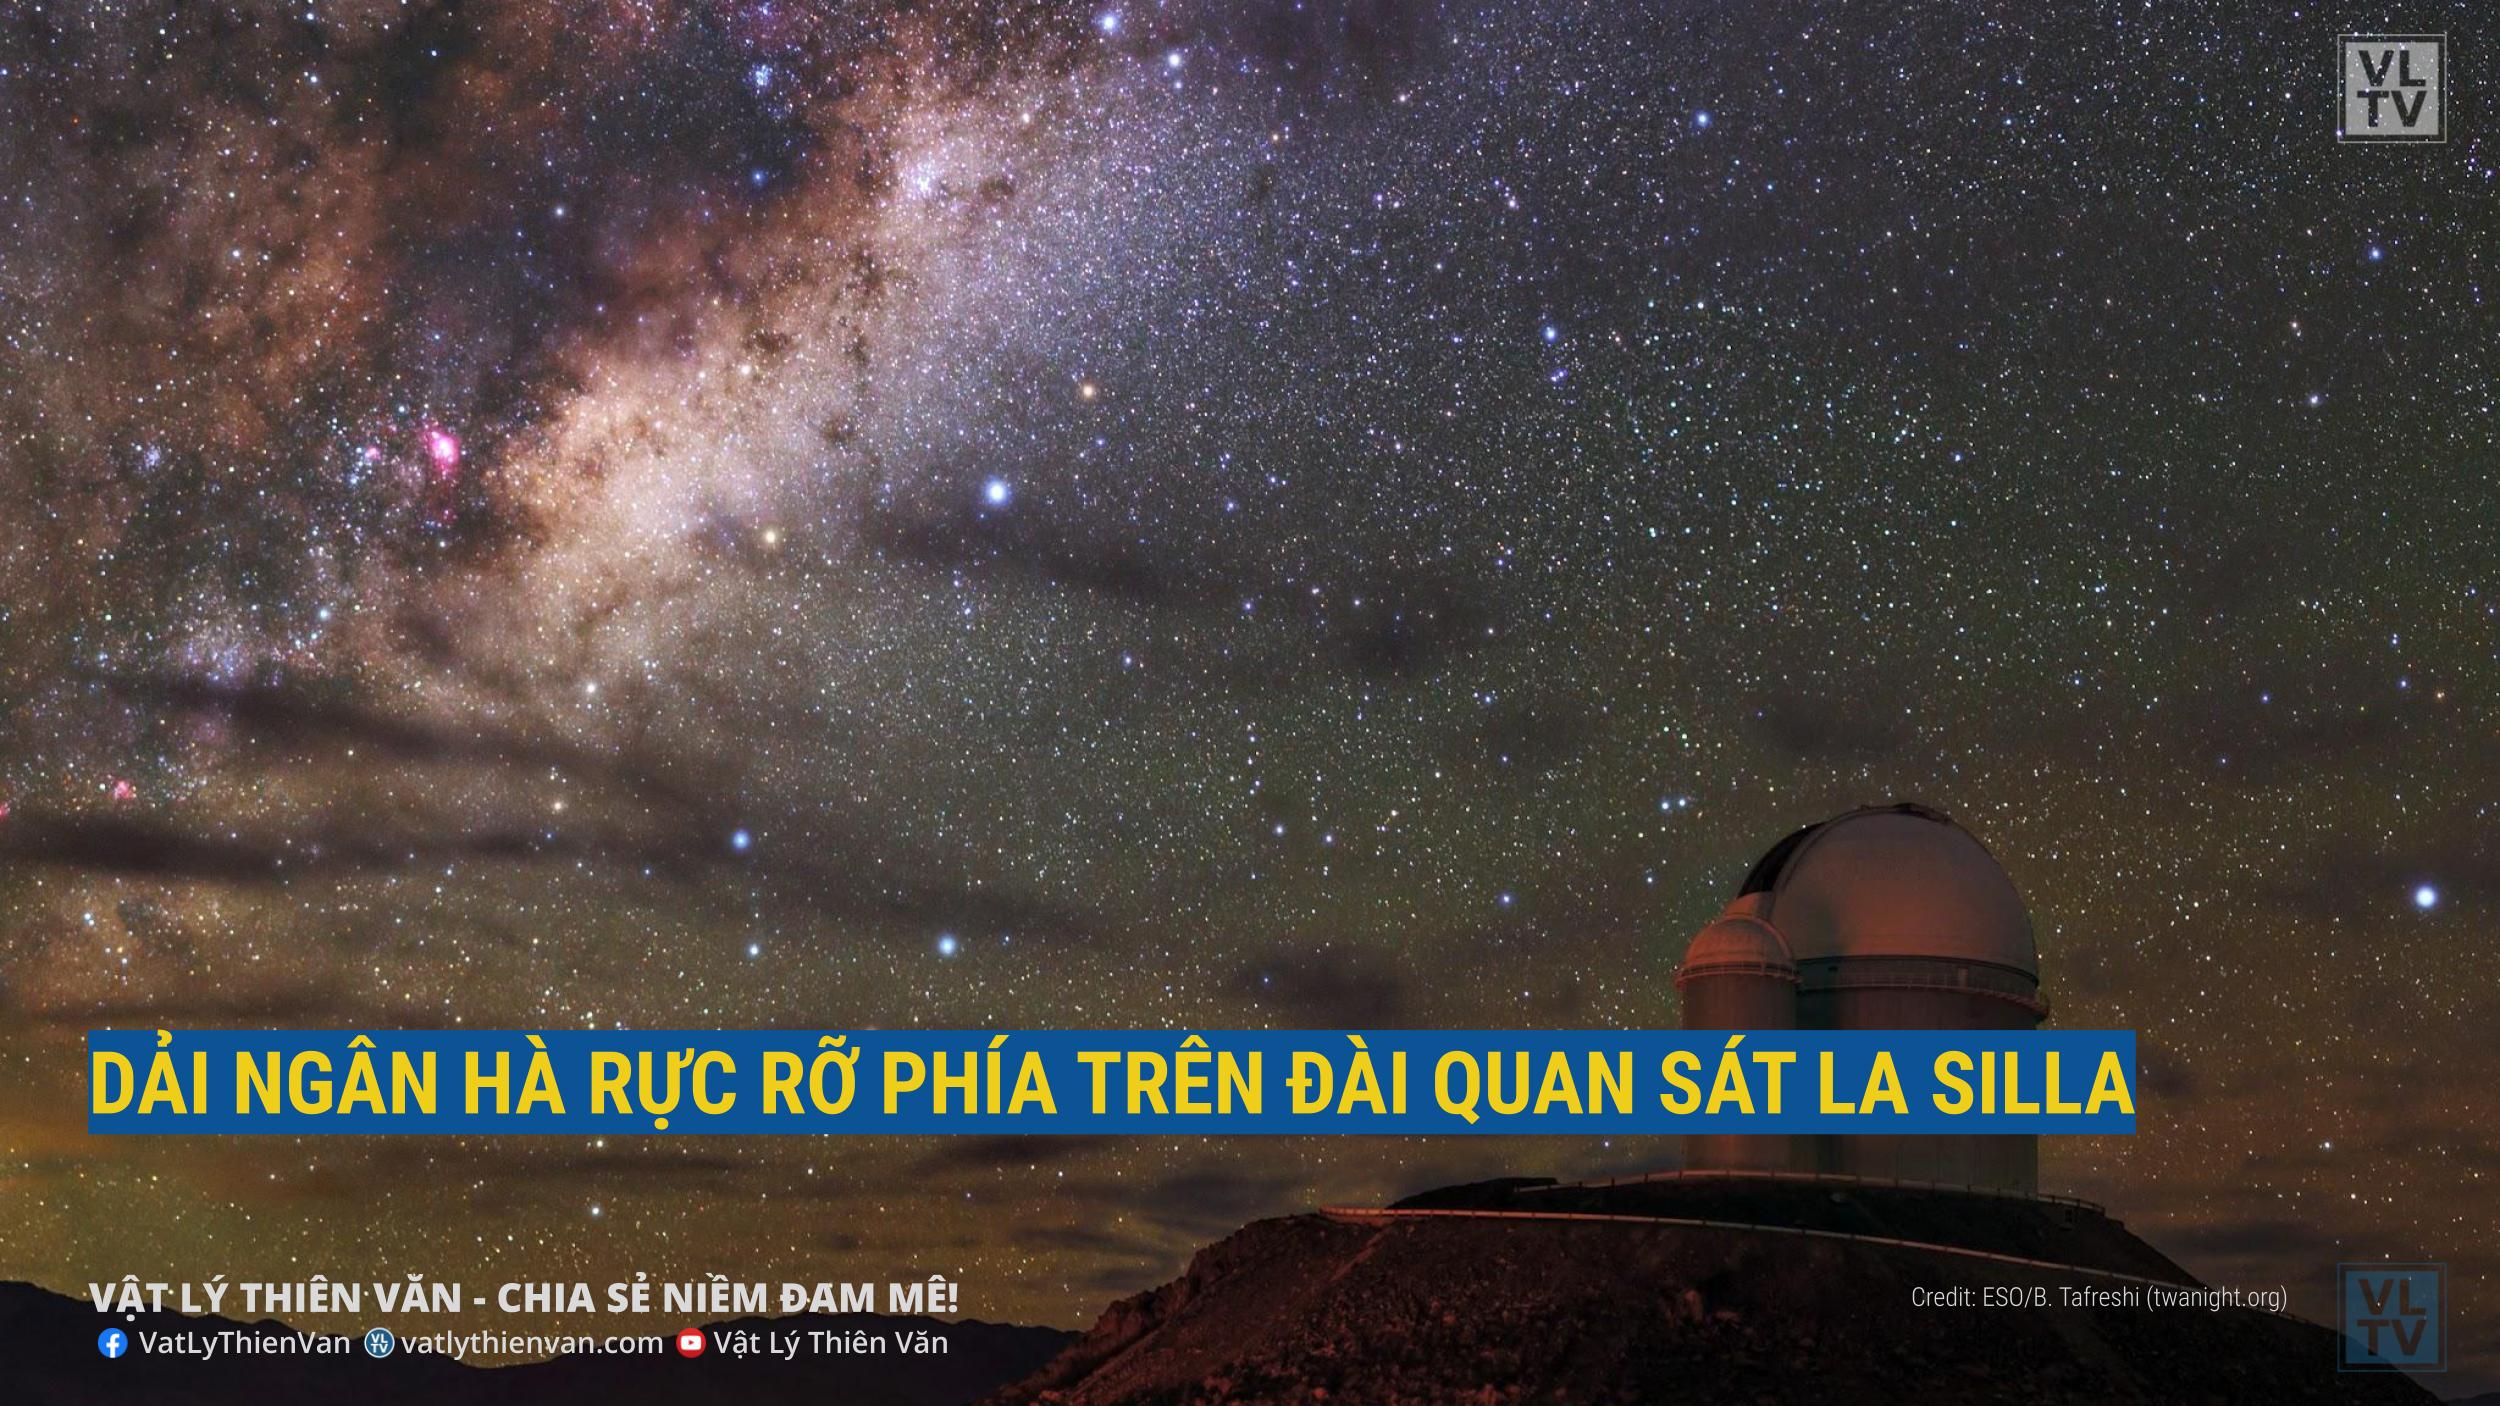 Dải Ngân hà tráng lệ của chúng ta đang tỏa sáng trên Đài quan sát La Silla. 